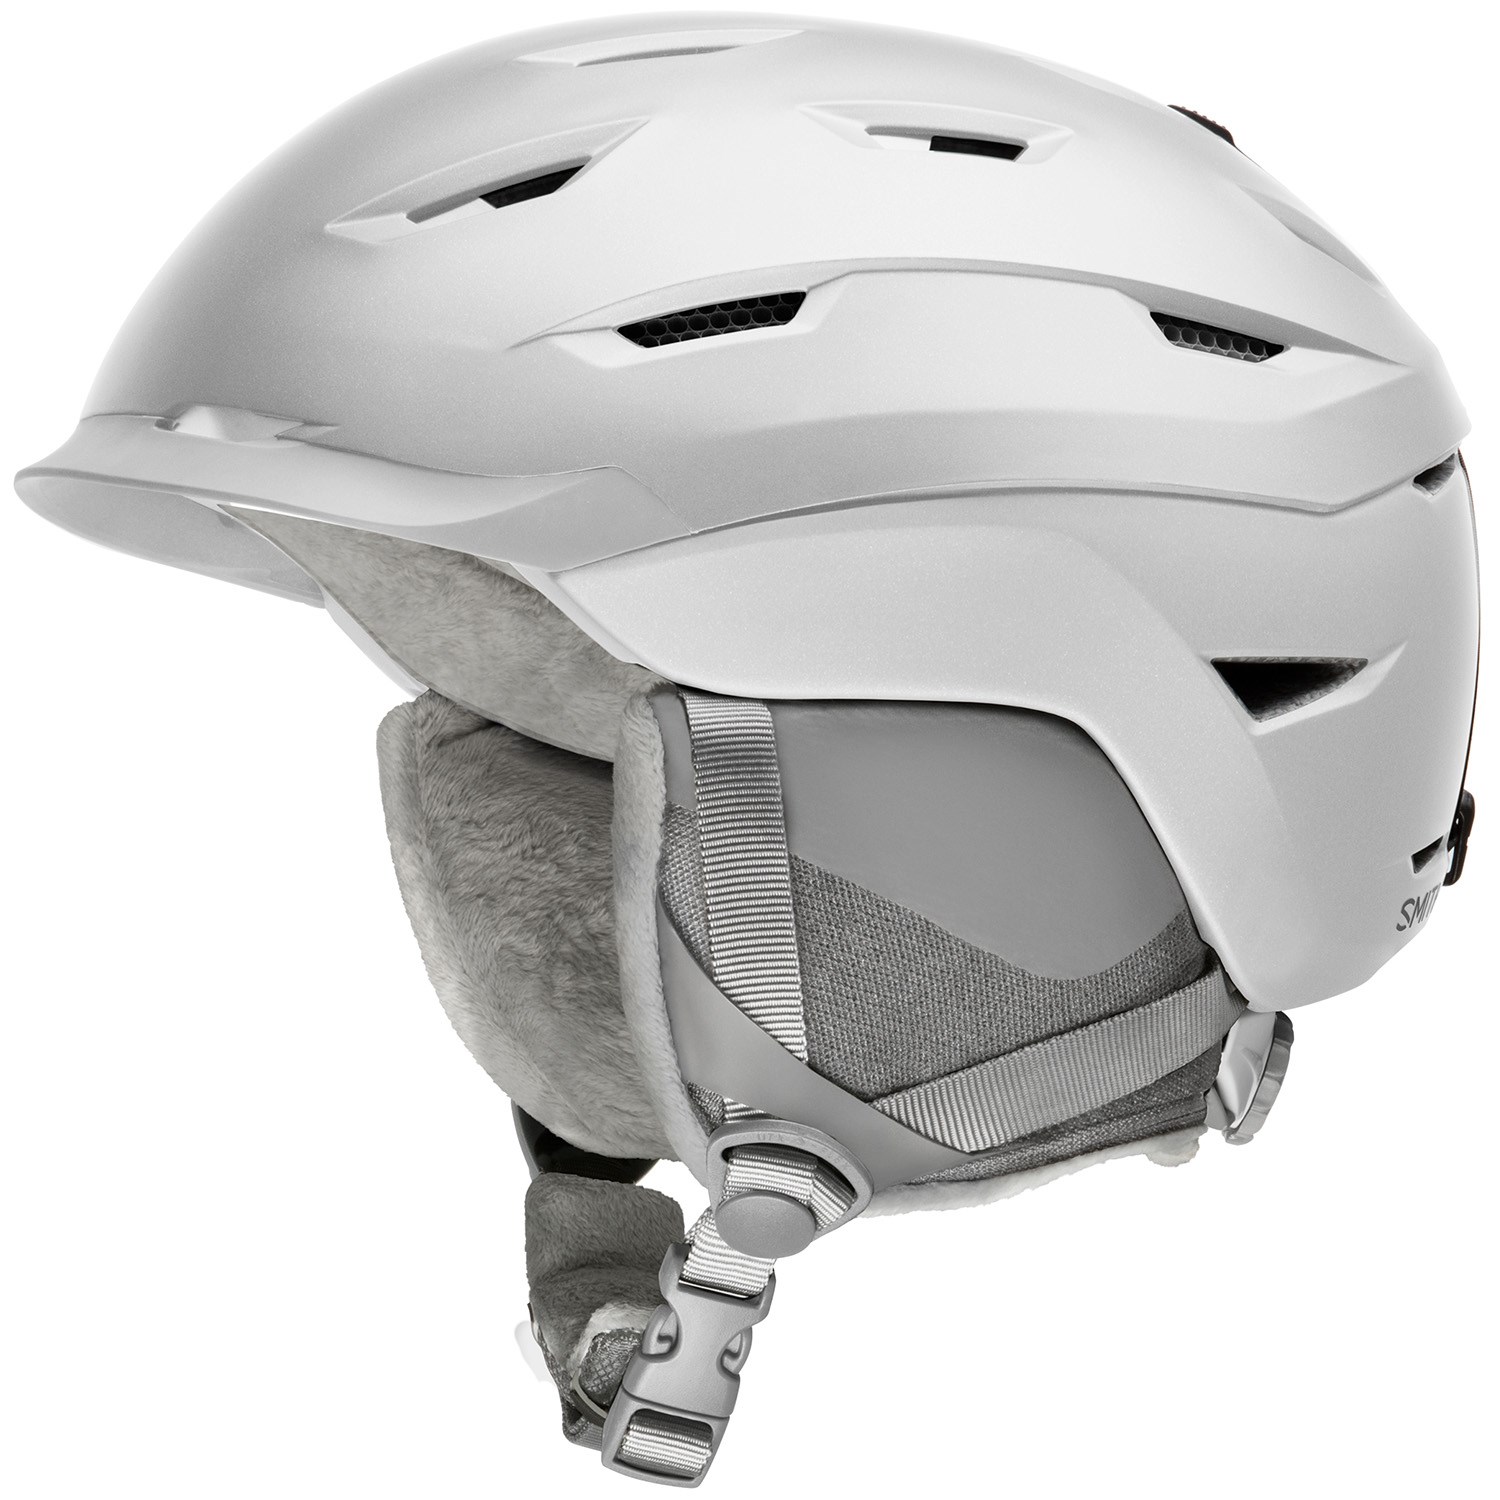 mips helmet meaning